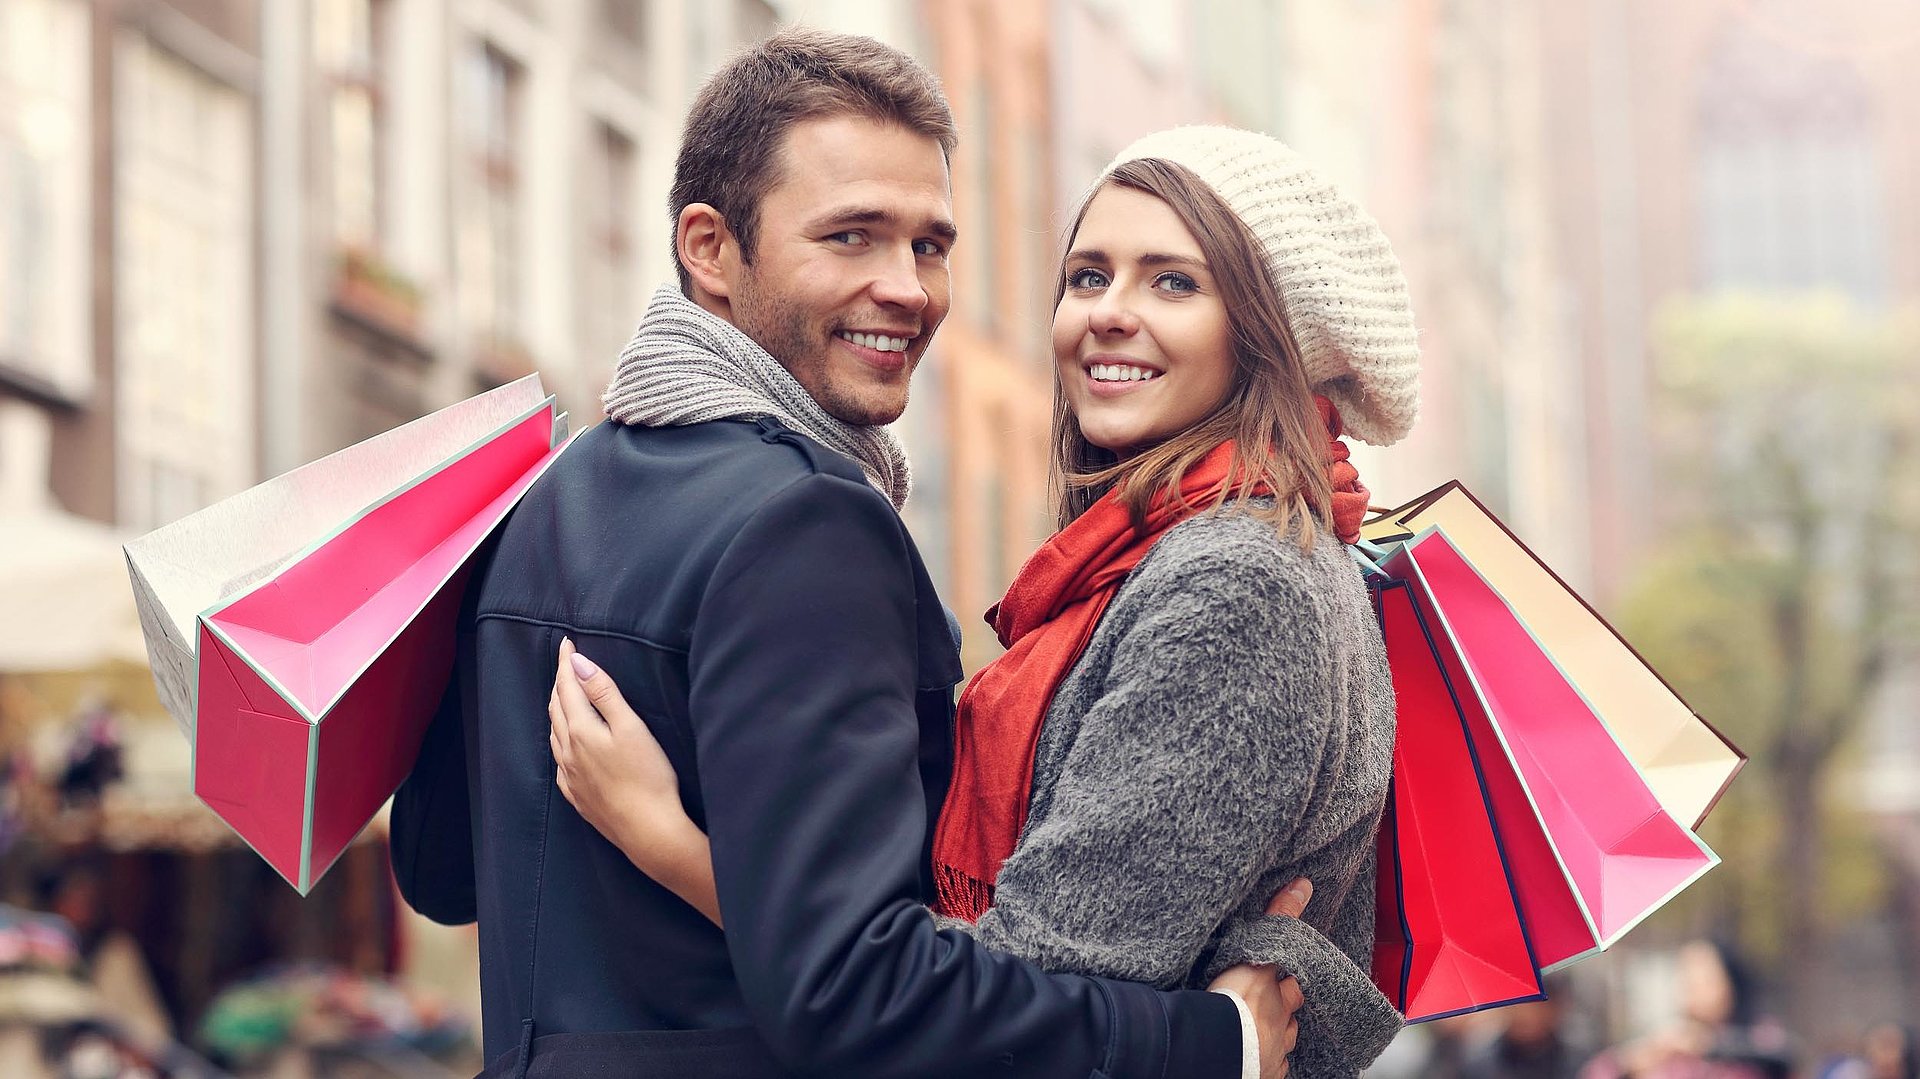 Einkaufen in Ostbayern - junges Paar mit Einkaufstüten lächelt in die Kamera